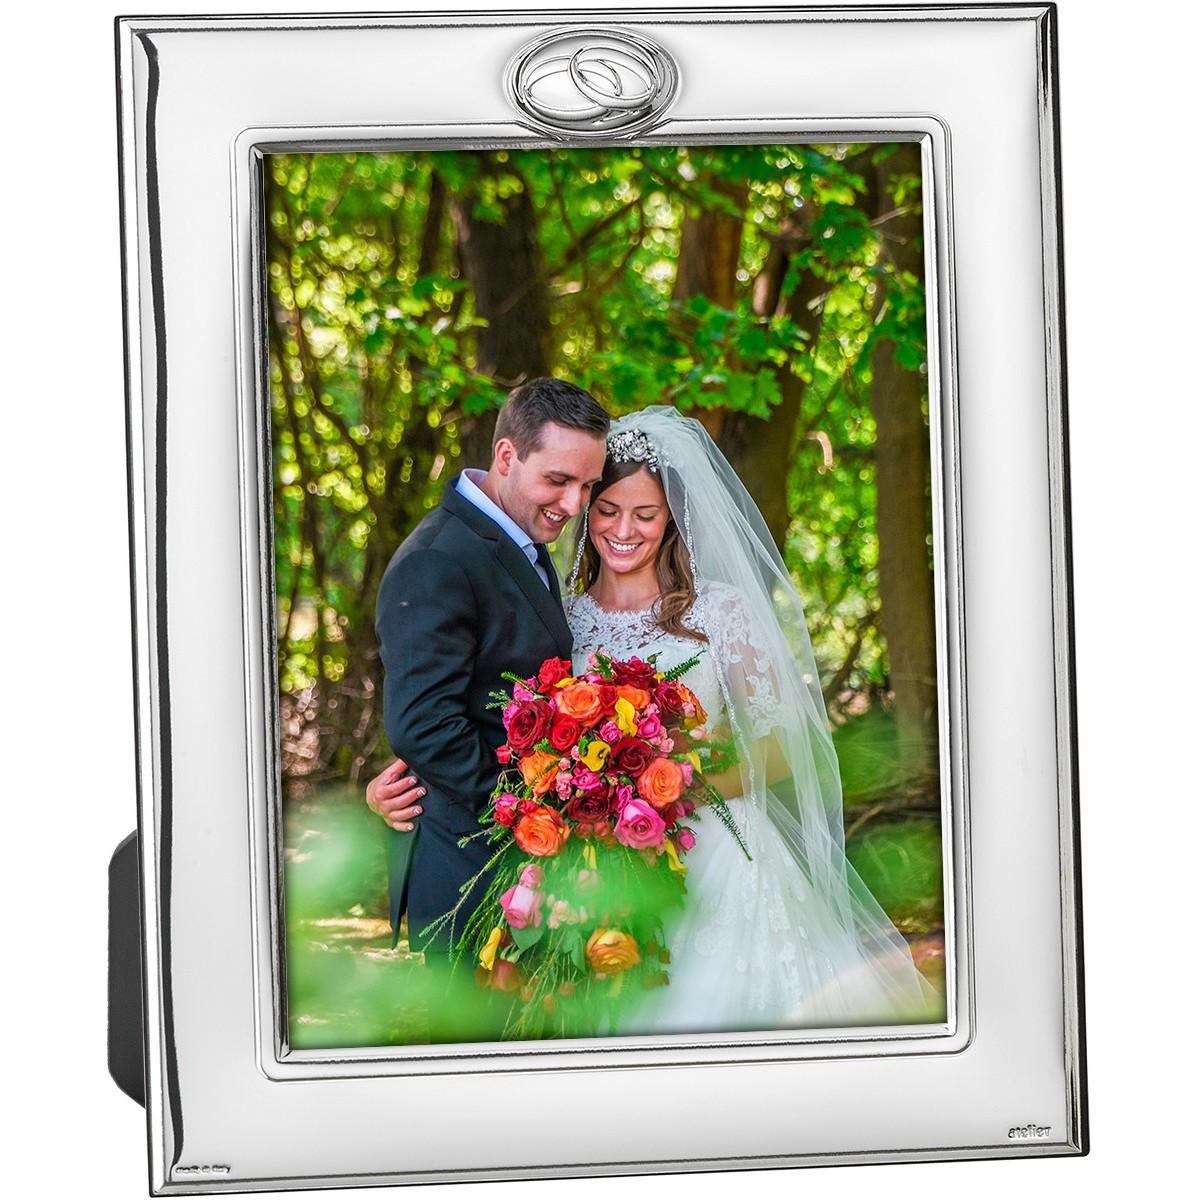 portafoto-marco-foto-plata-bilaminado-15x20-bodas-boda-alianzas-regalo-aniversario-boda-brillo-mate-deamsa-lomejorsg.jpg